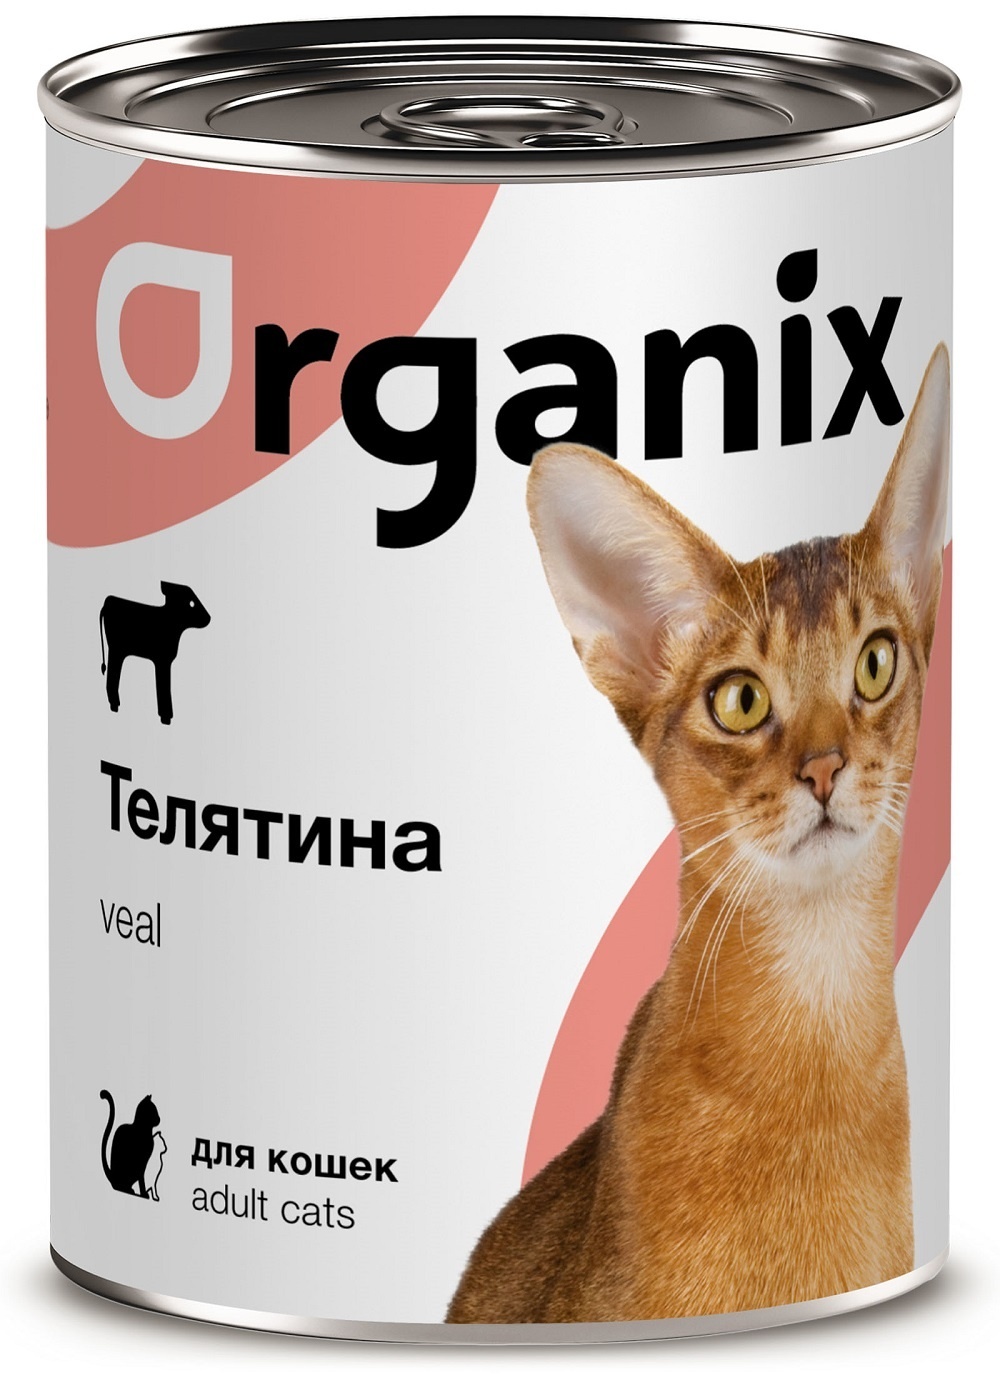 Organix консервы Organix консервы с телятиной для кошек (250 г) фото